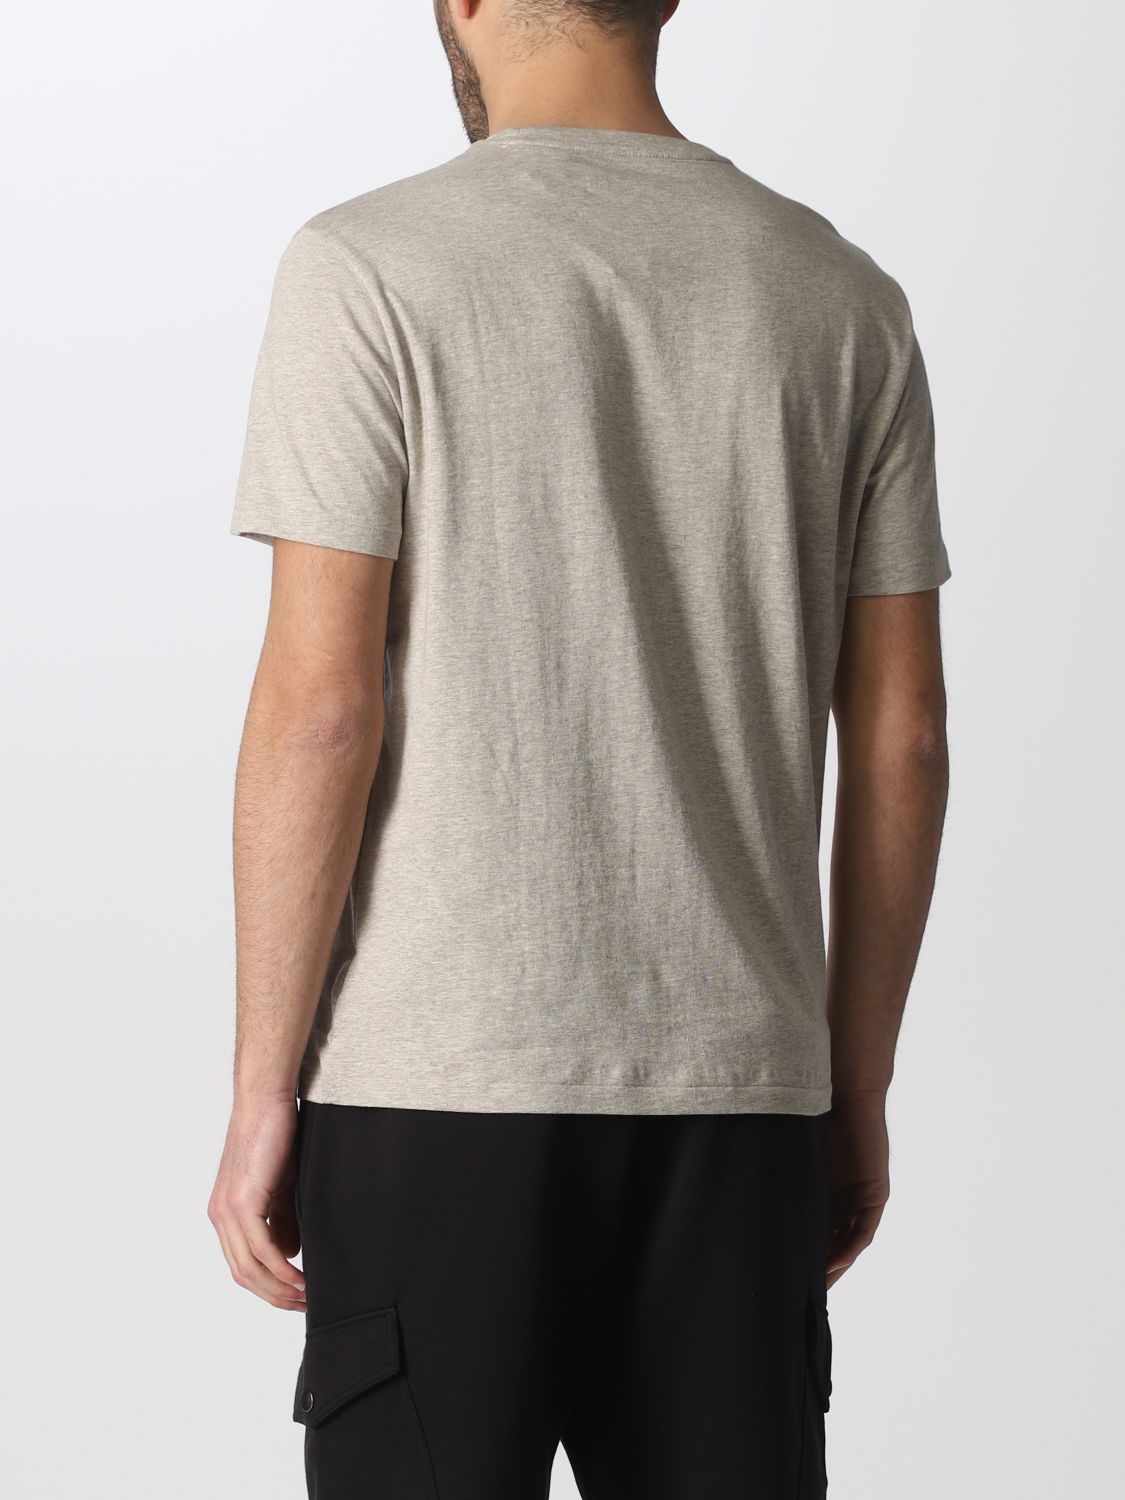 POLO RALPH LAUREN: T-shirt men | T-Shirt Polo Ralph Lauren Men White ...